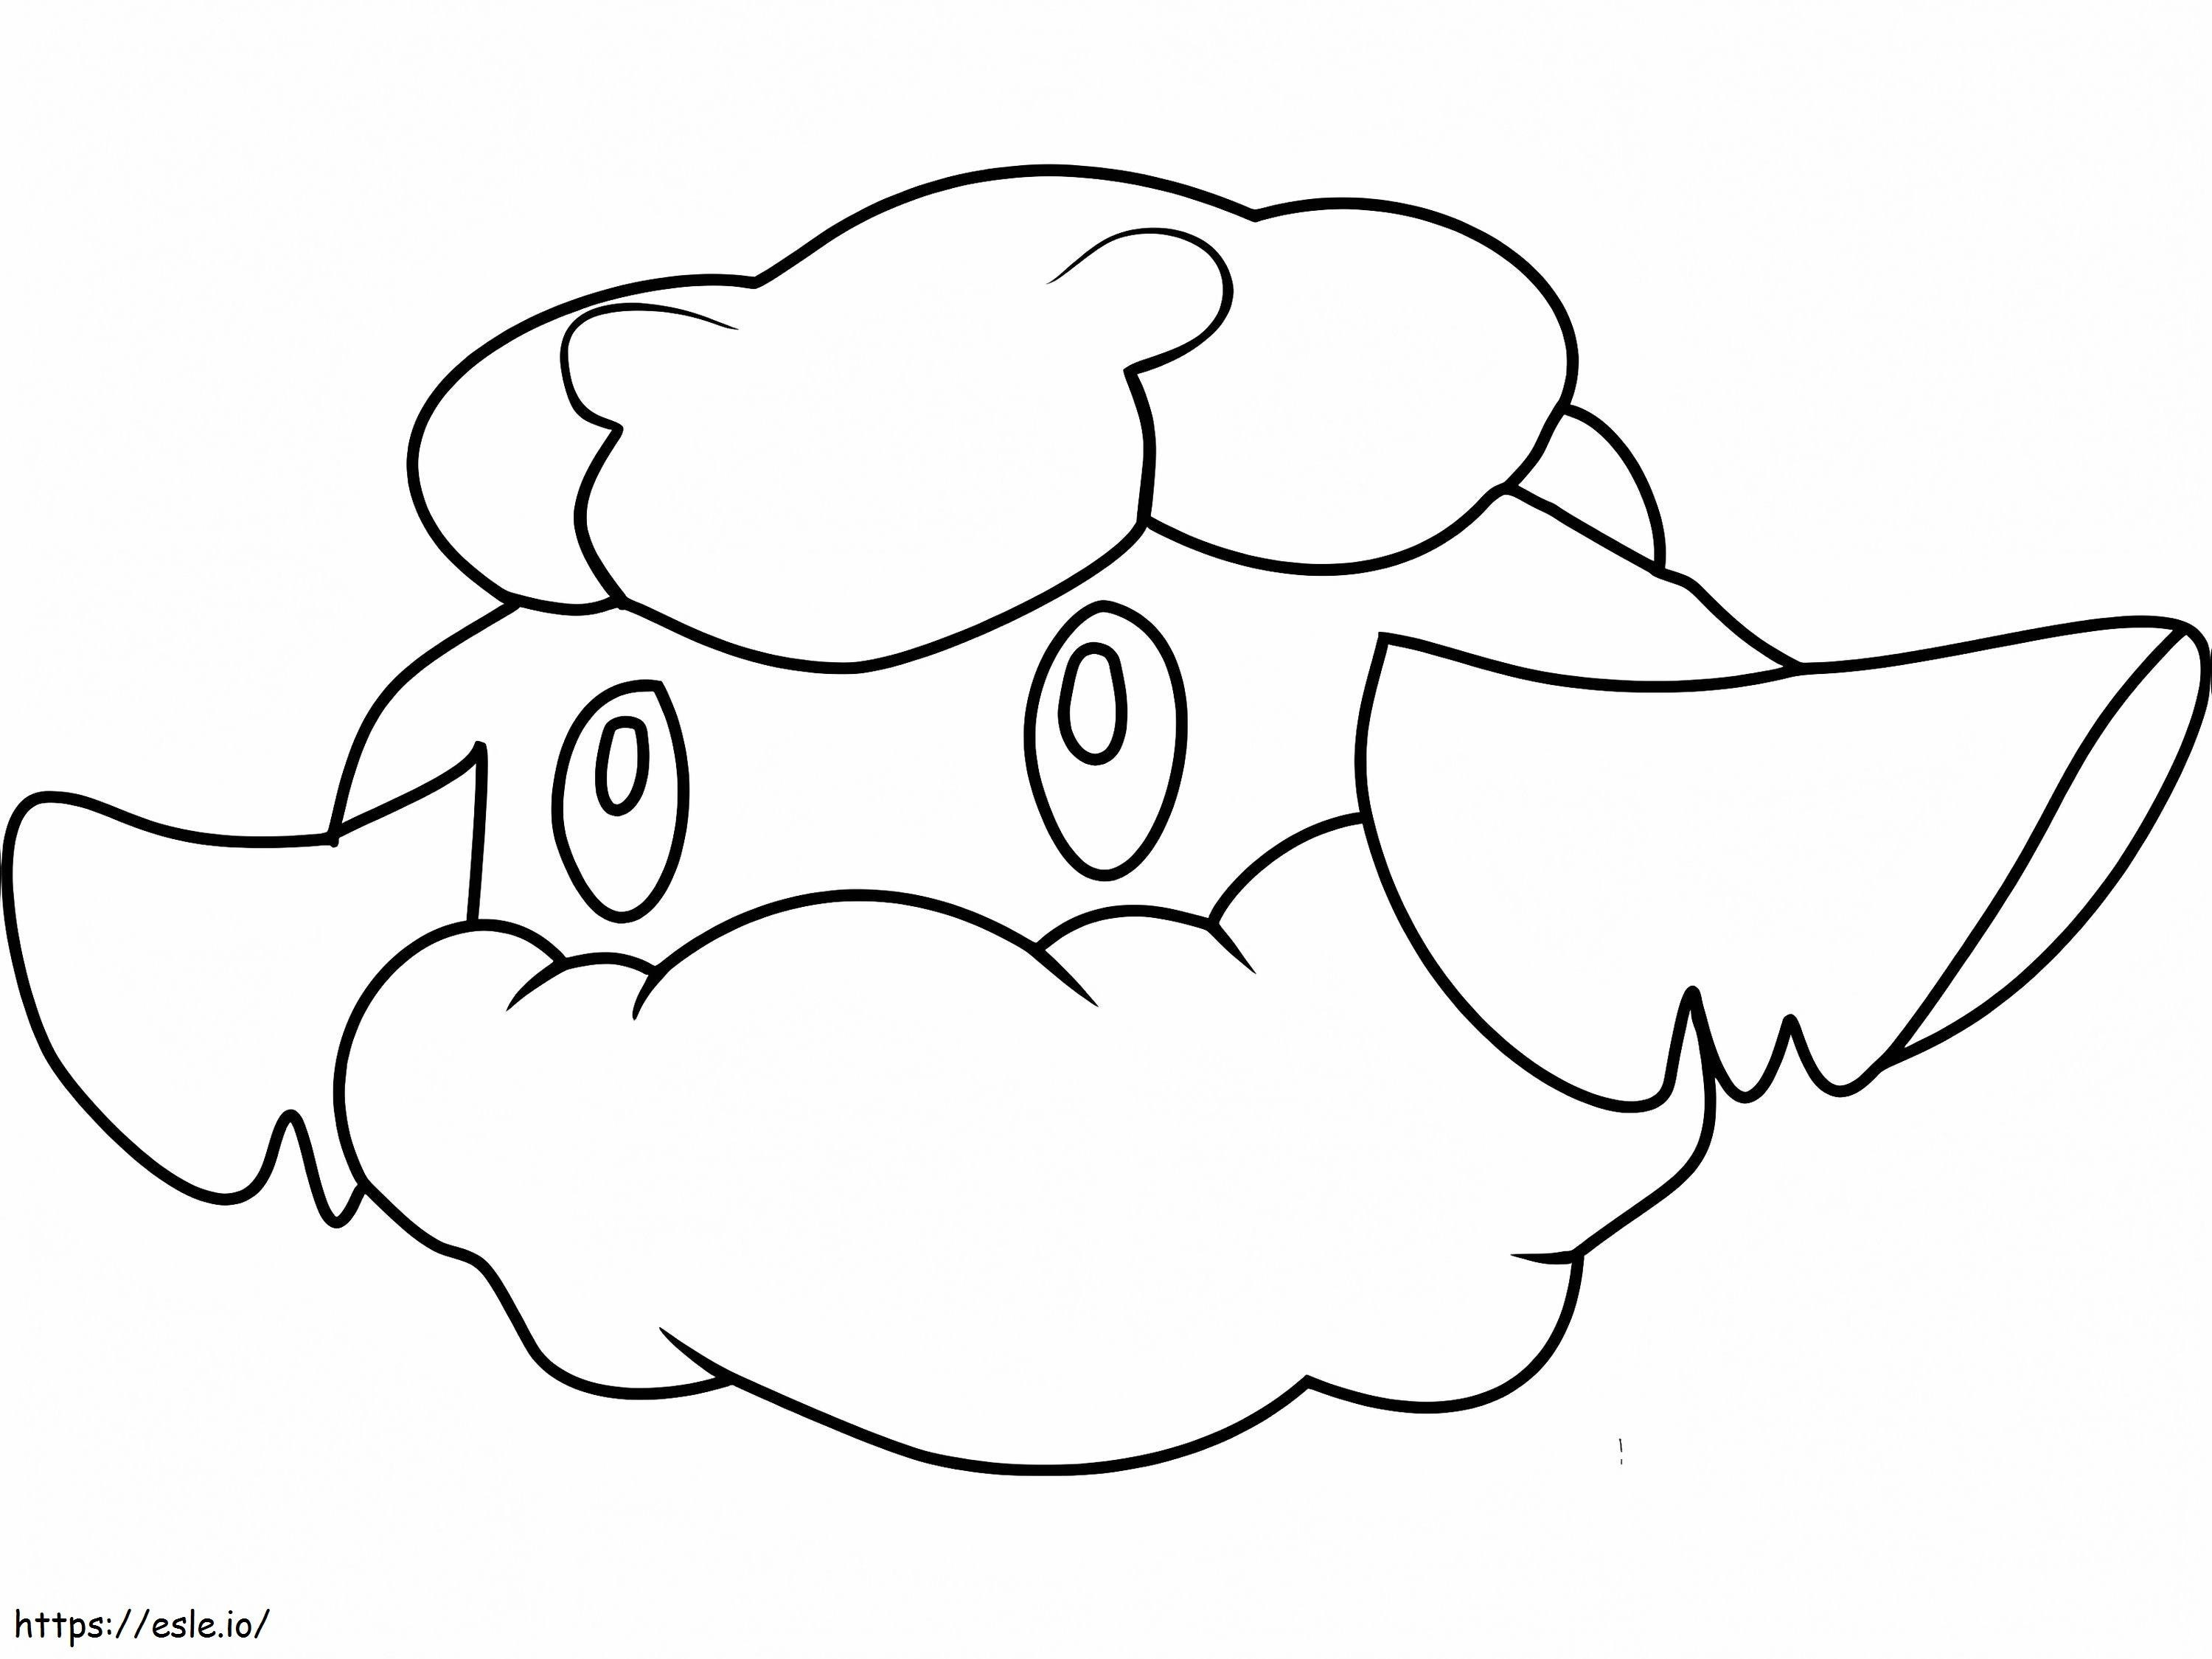 Coloriage Pokémon Cottonee Gen 5 à imprimer dessin